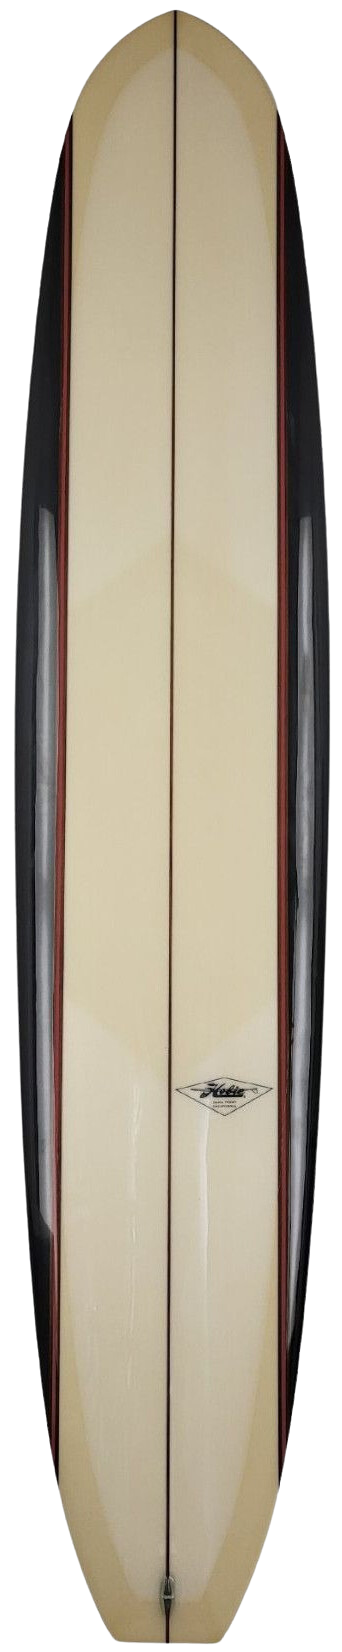 Hobie No. 41 Longboard Surfboard